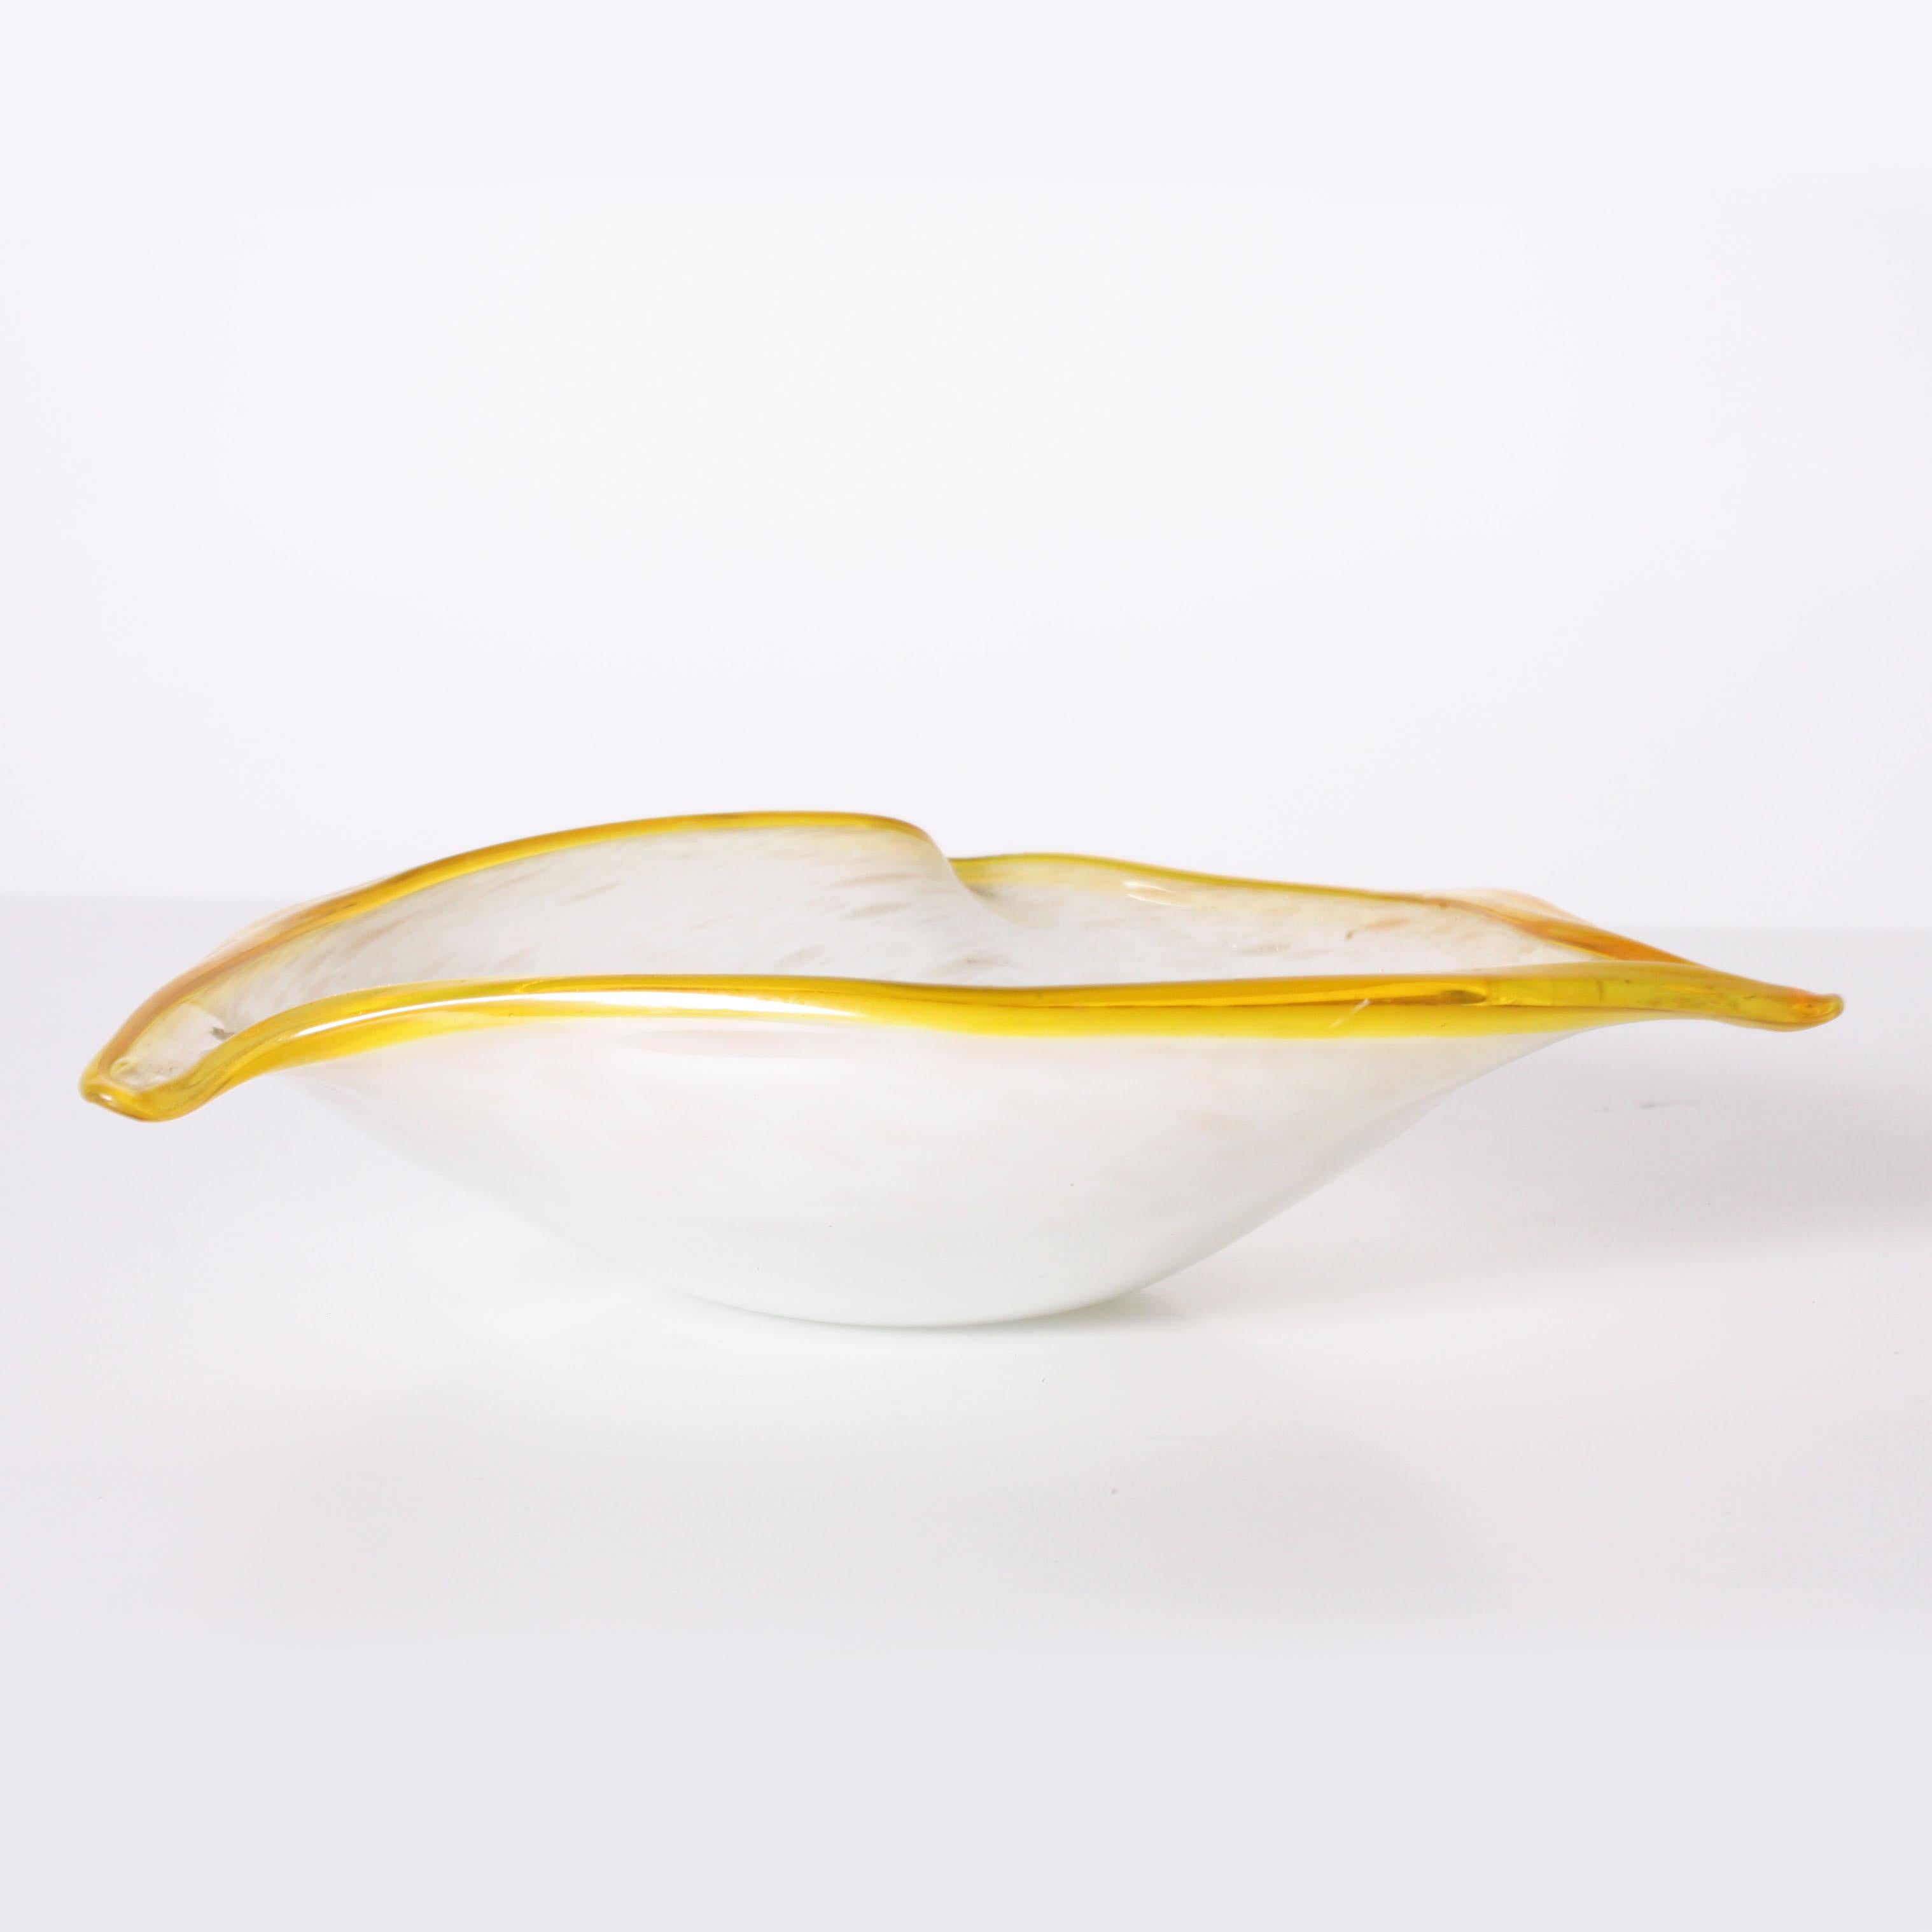 Murano glass three corner bowl, circa 1970.
$425.